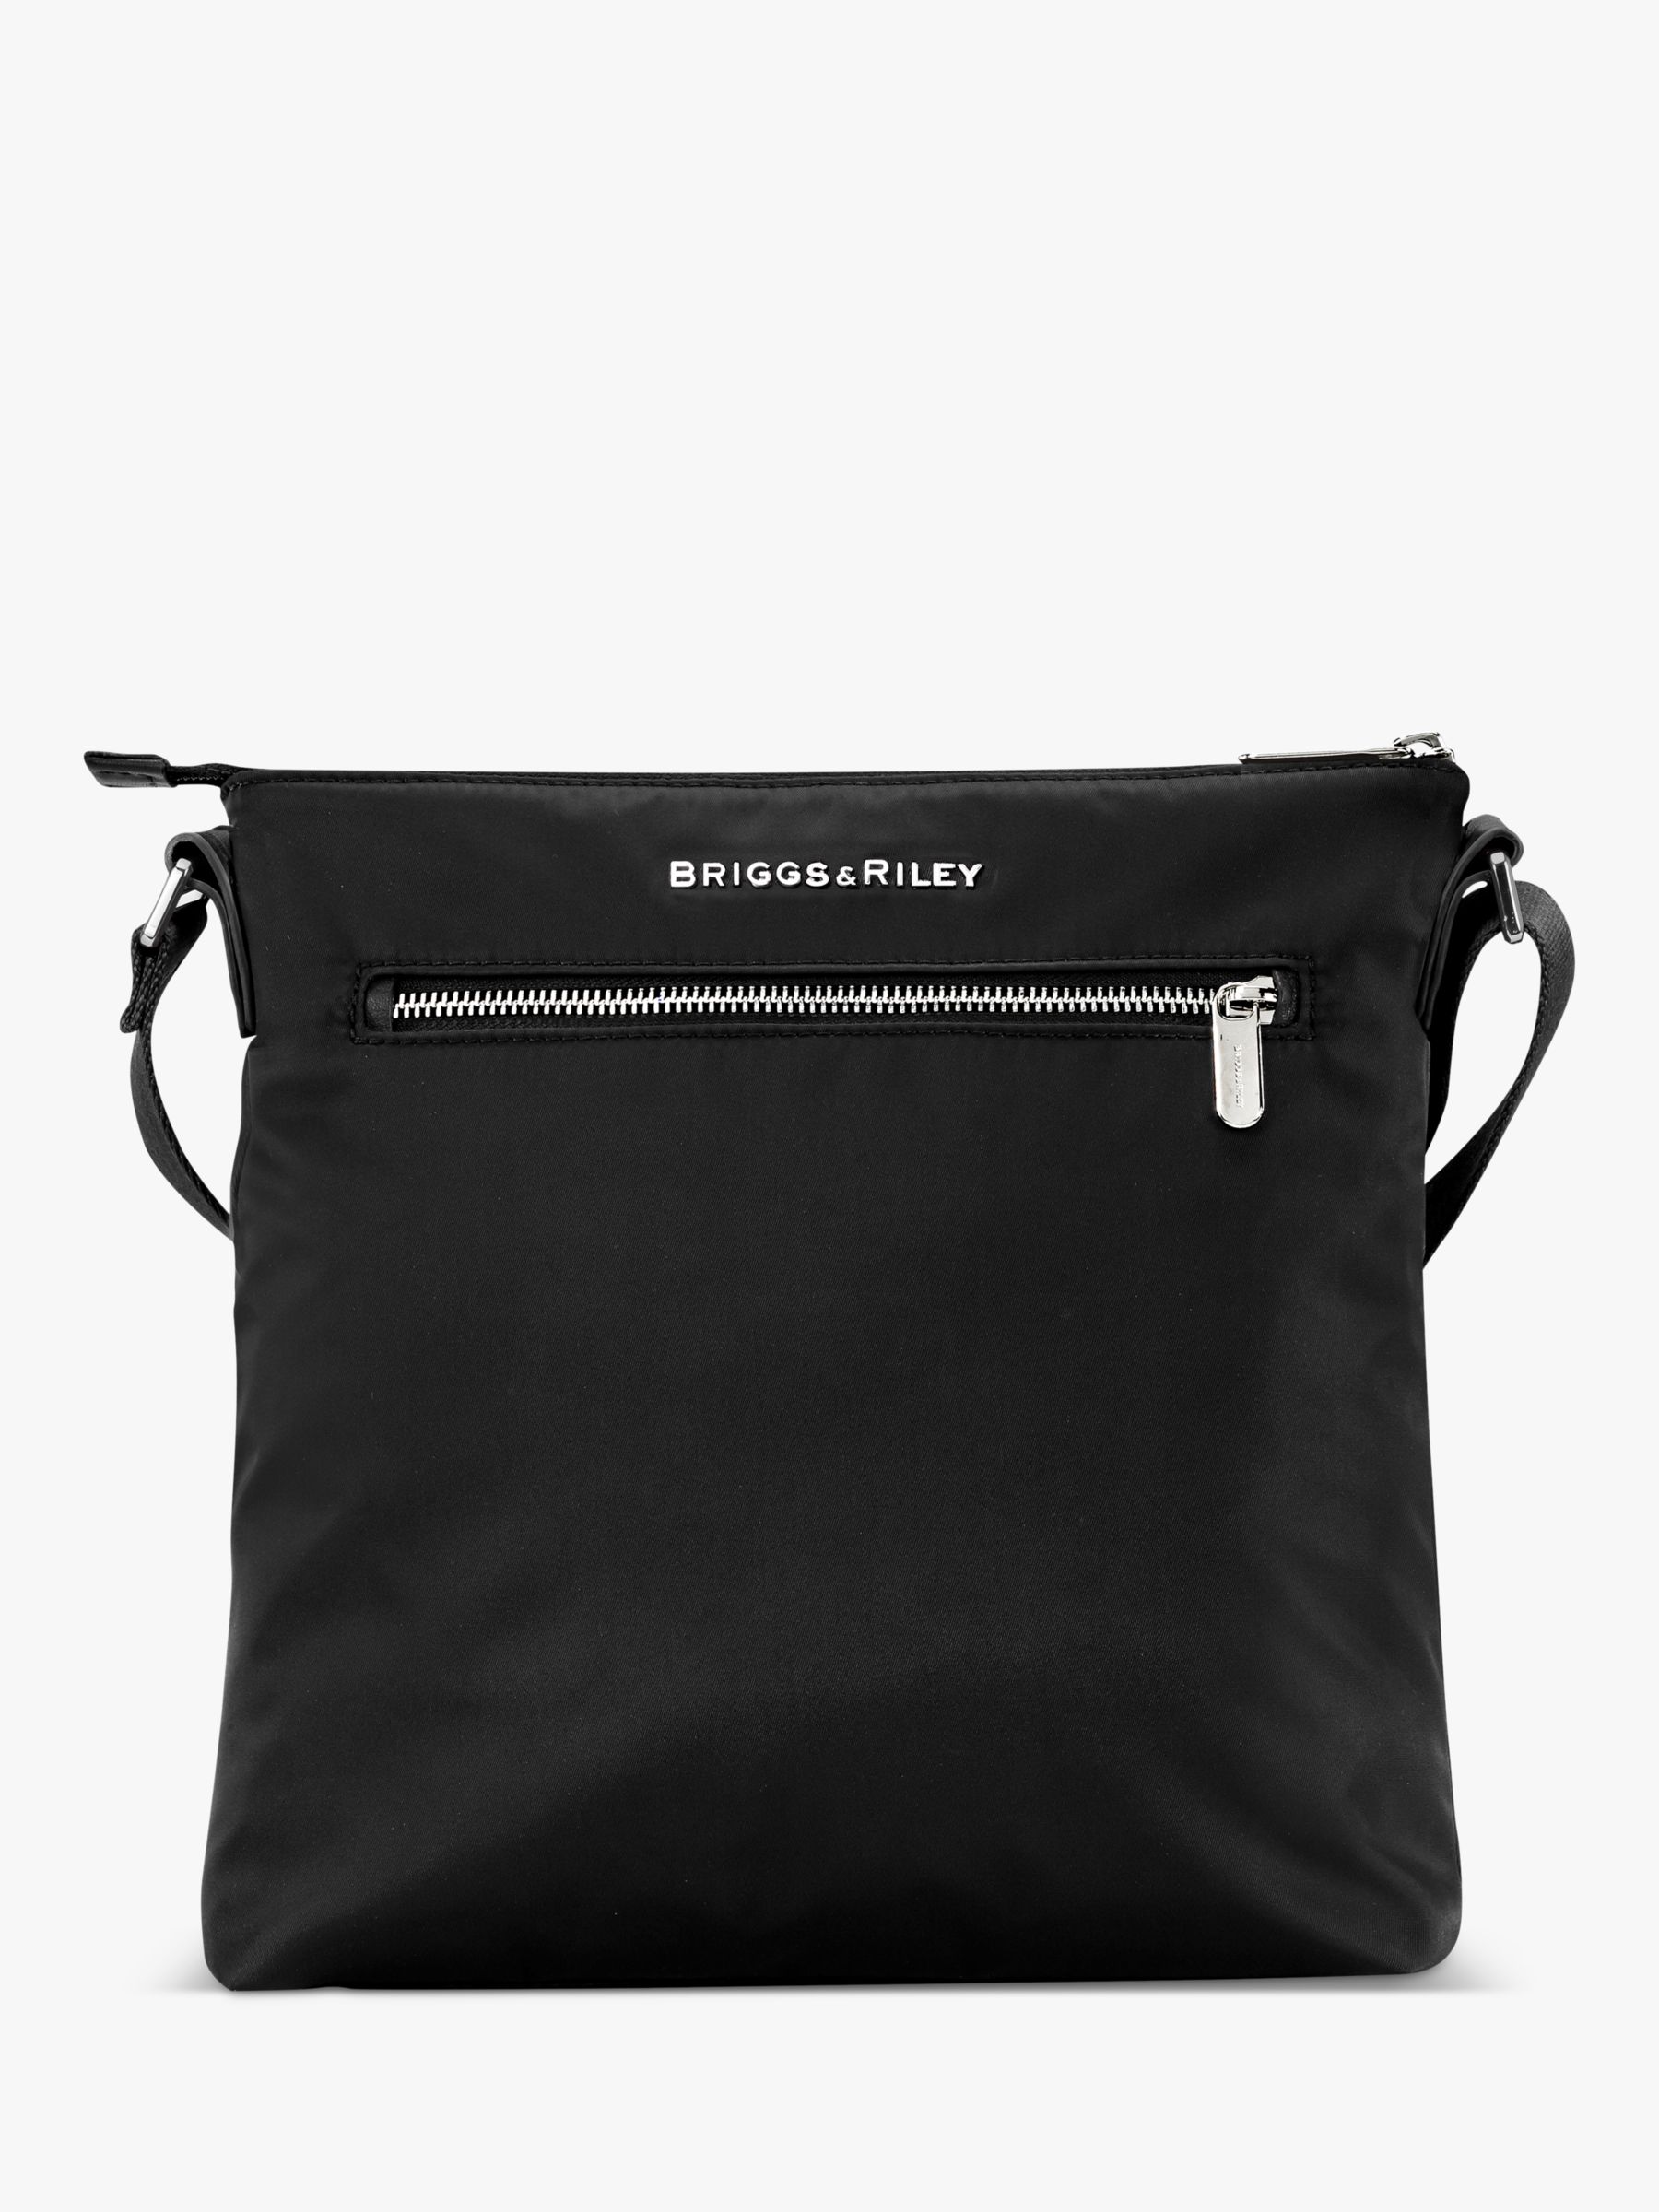 Briggs & Riley Rhapsody Cross Body Bag, Black